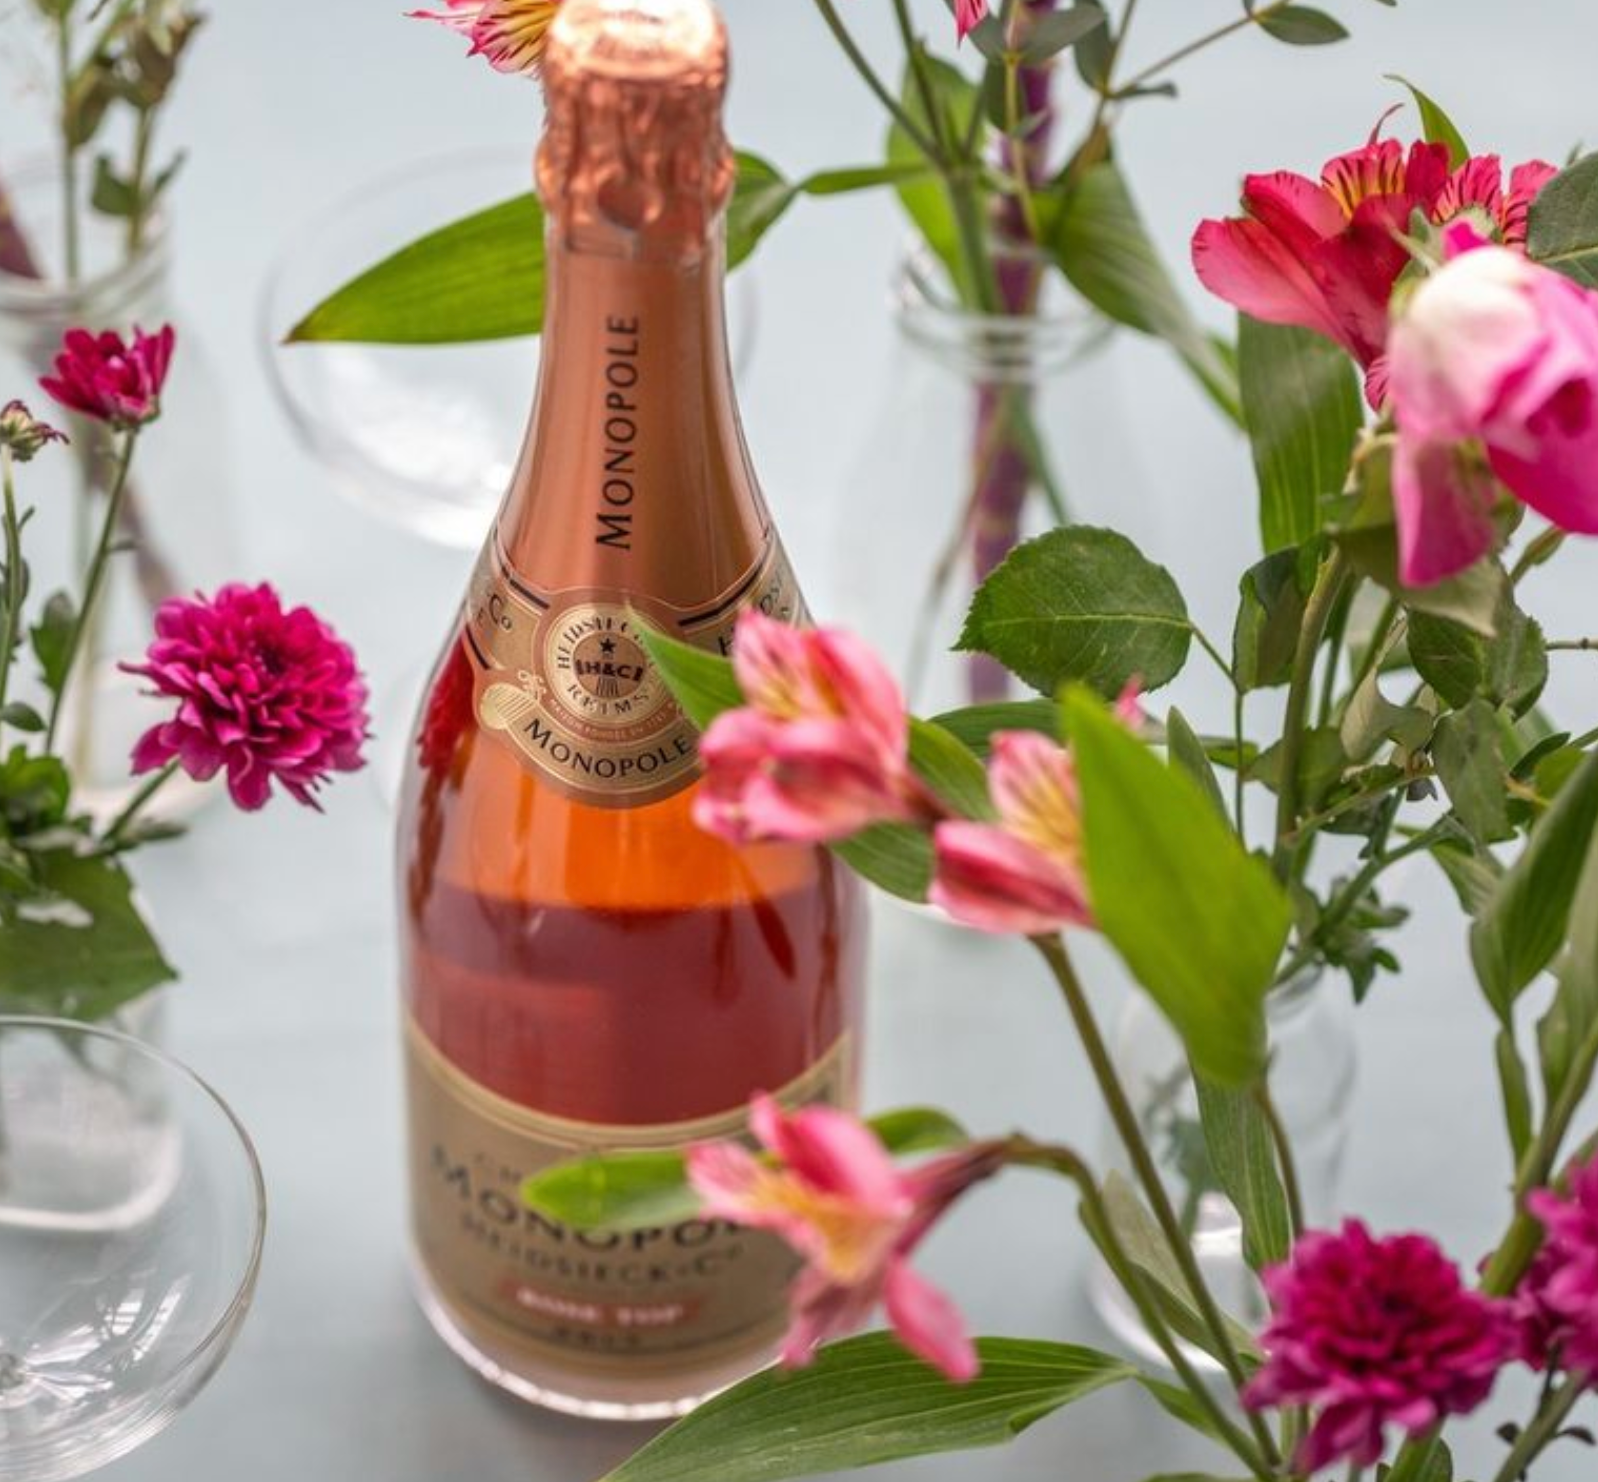 Monopole Heidsieck Brut Rosé Champagne